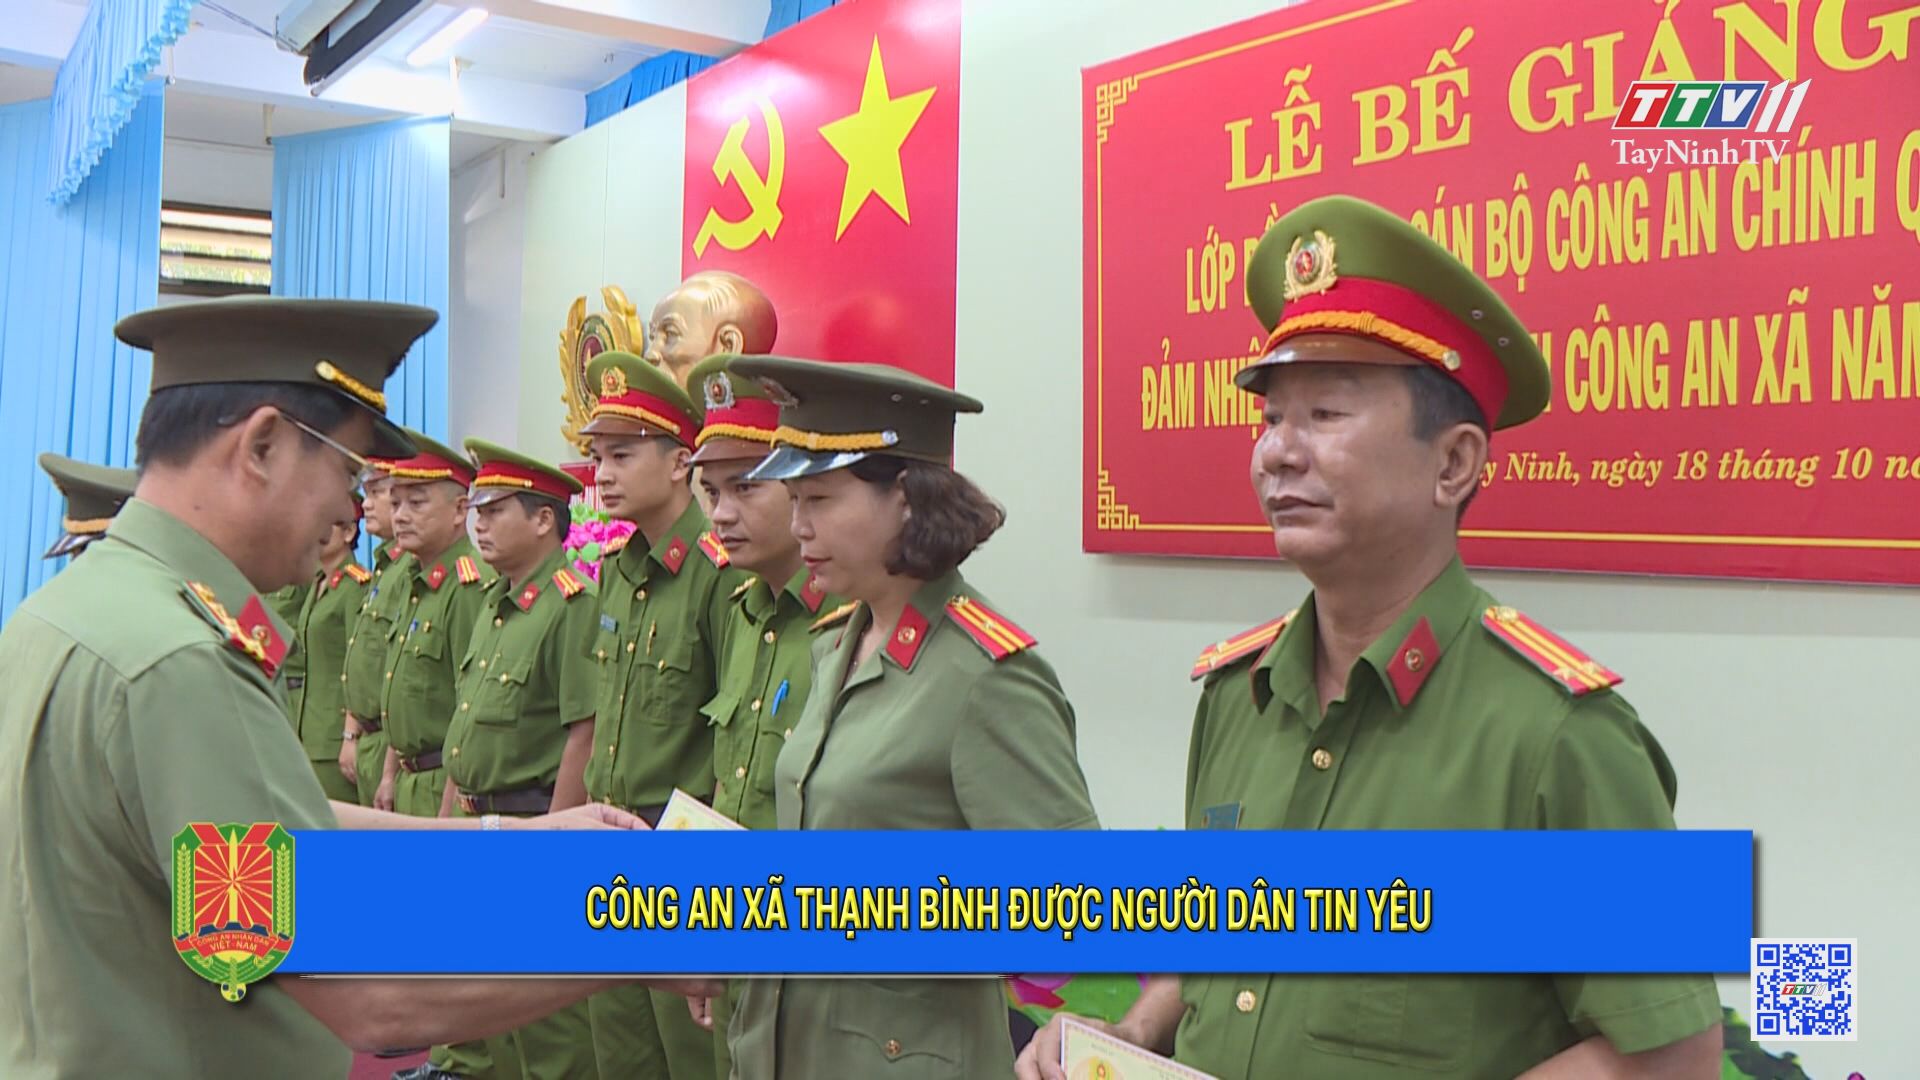 Công an xã Thạnh Bình được người dân tin yêu | An ninh Tây Ninh | TayNinhTV